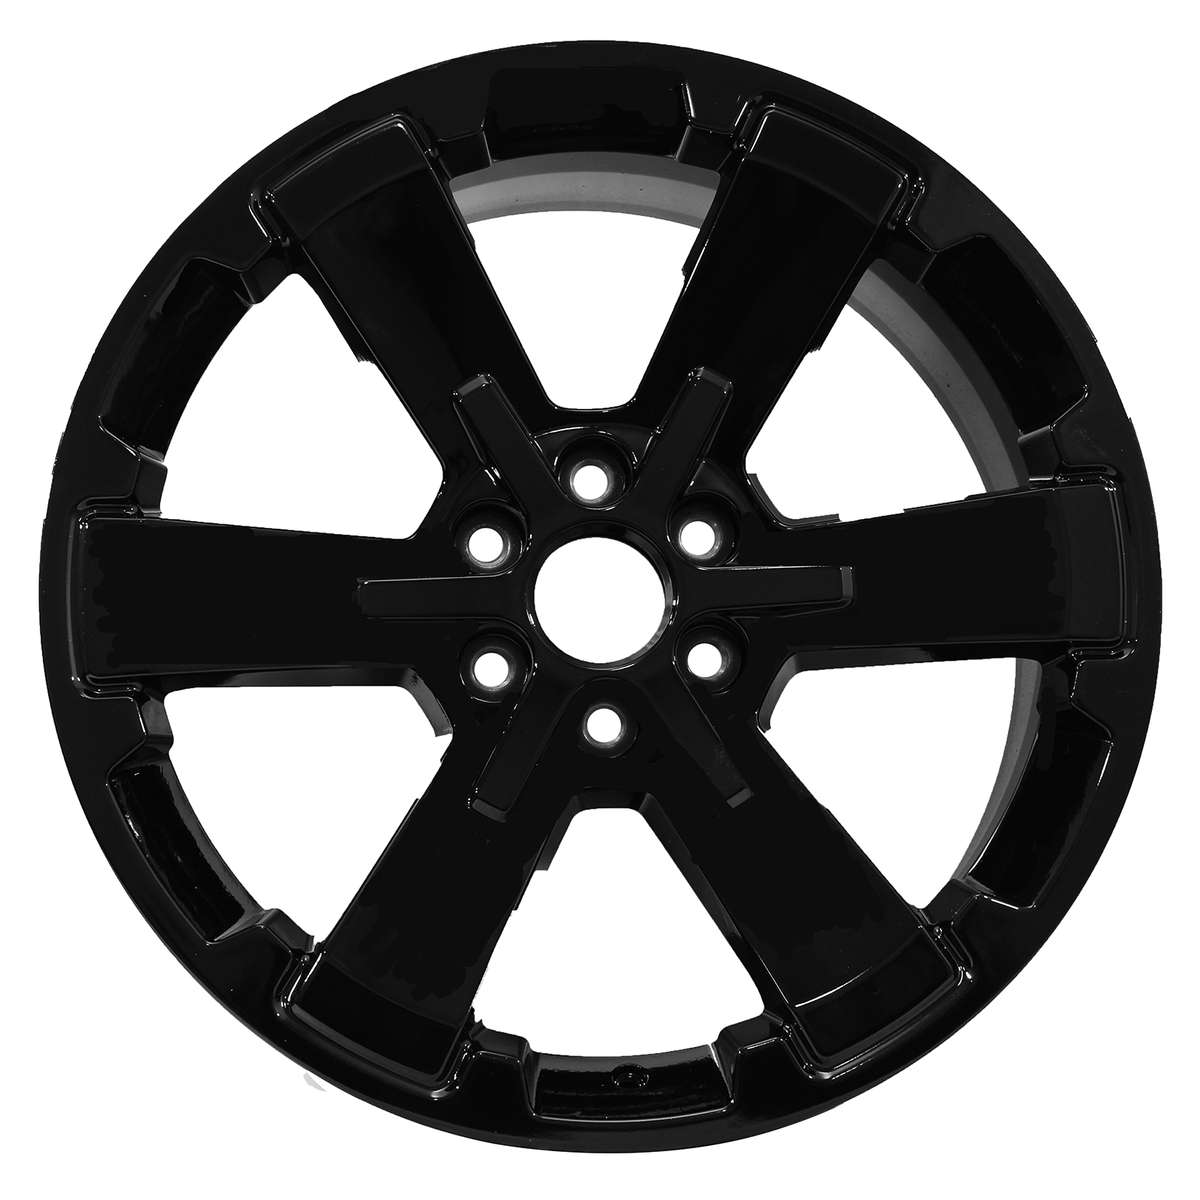 2014 Chevrolet Silverado 1500 New 22" Replacement Wheel Rim RW5662B